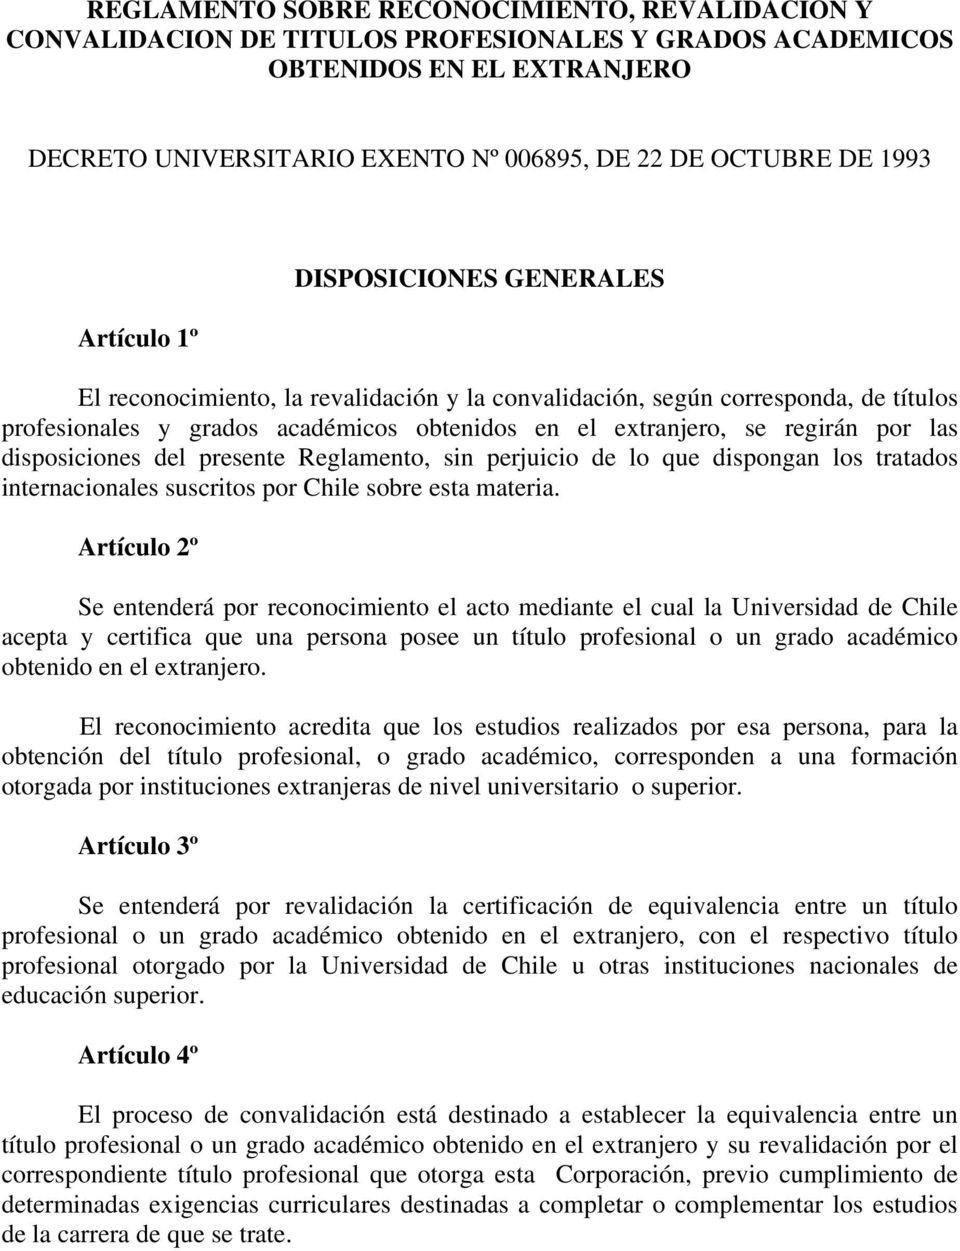 las disposiciones del presente Reglamento, sin perjuicio de lo que dispongan los tratados internacionales suscritos por Chile sobre esta materia.